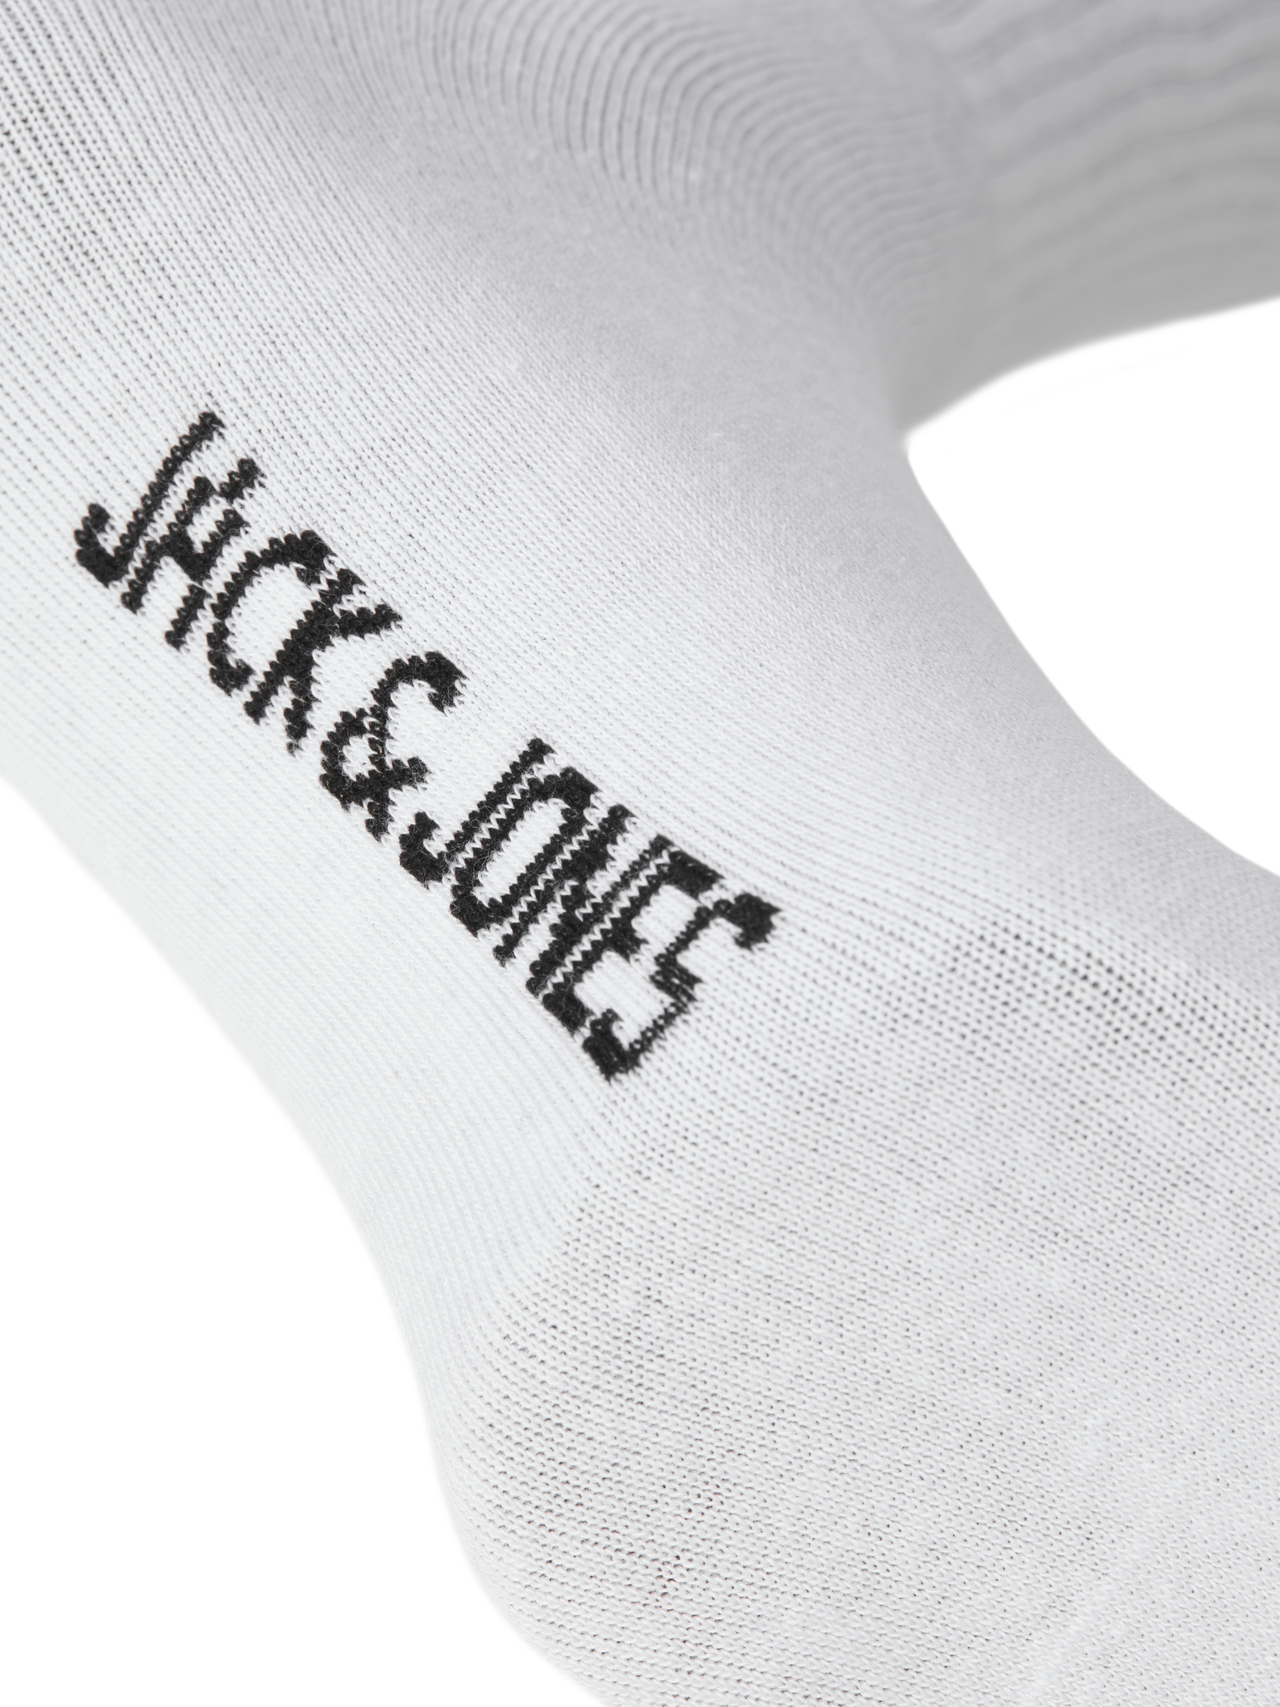 Jack & Jones 3er-pack Socken -White - 12260081